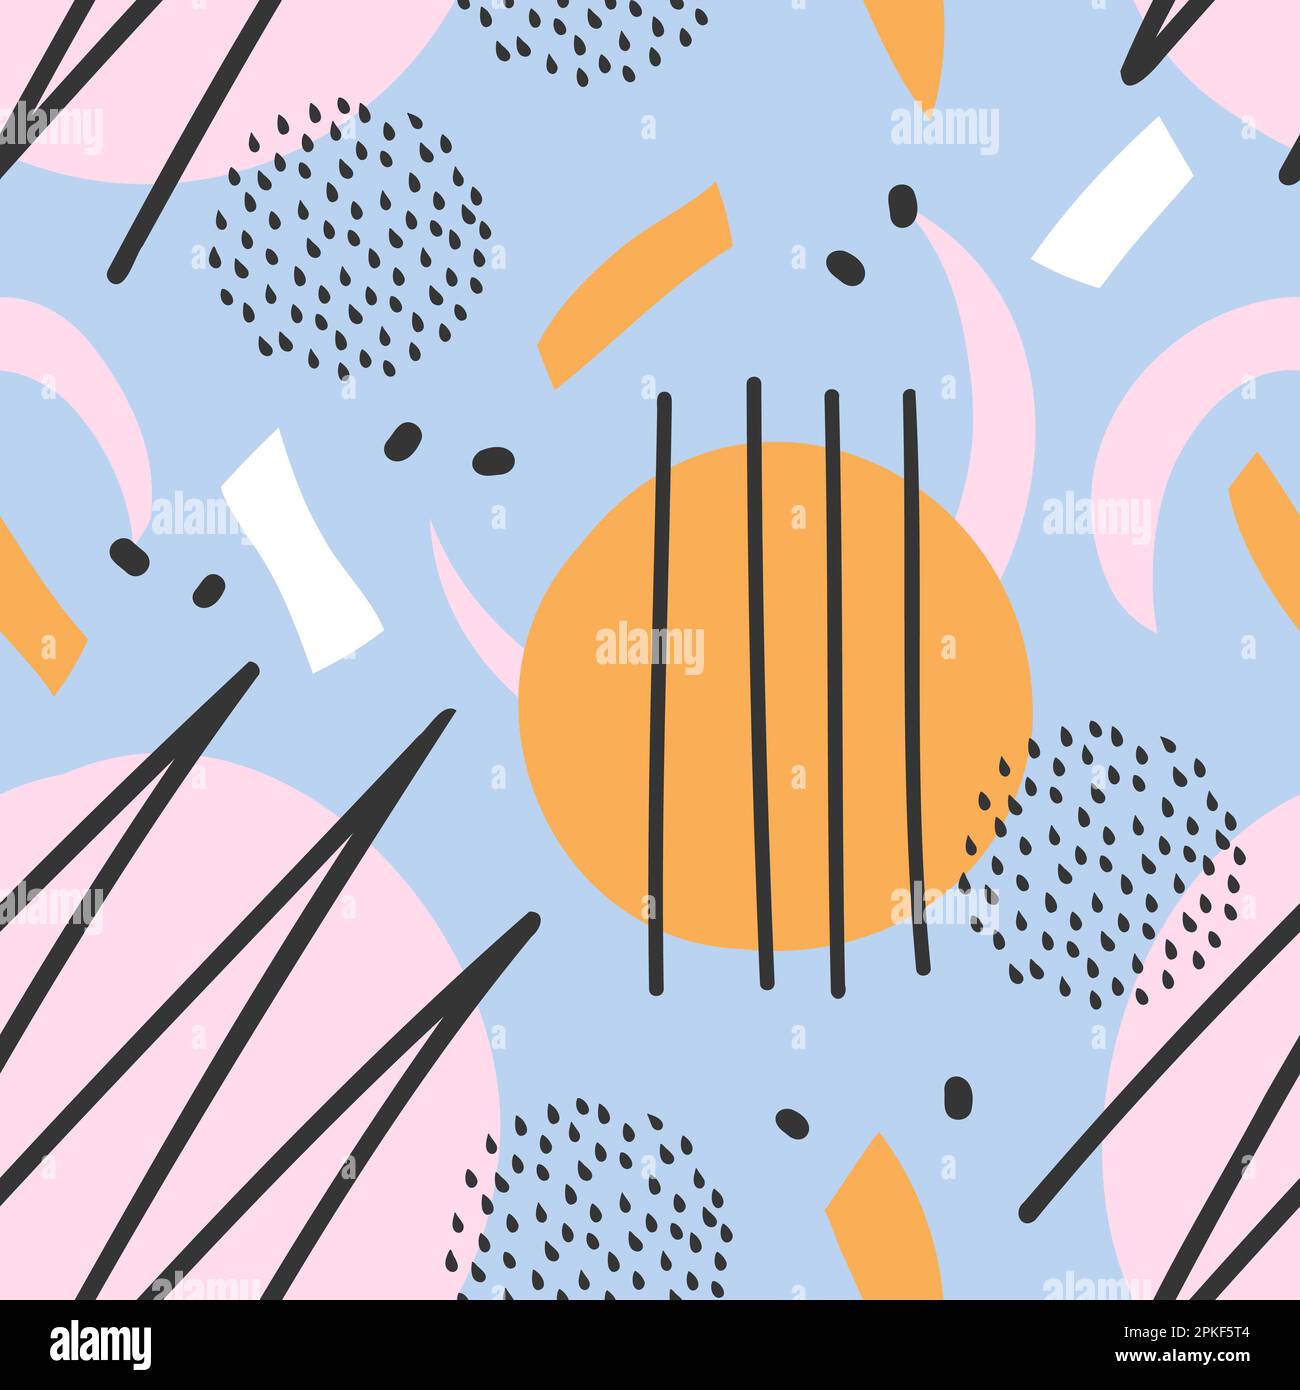 Ästhetisches, nahtloses Muster mit abstrakten Formen Kritzelpunkte. Memphis-Collage-Hintergrund. Vektordarstellung für Poster, Social-Media-Vorlagen. Stock Vektor